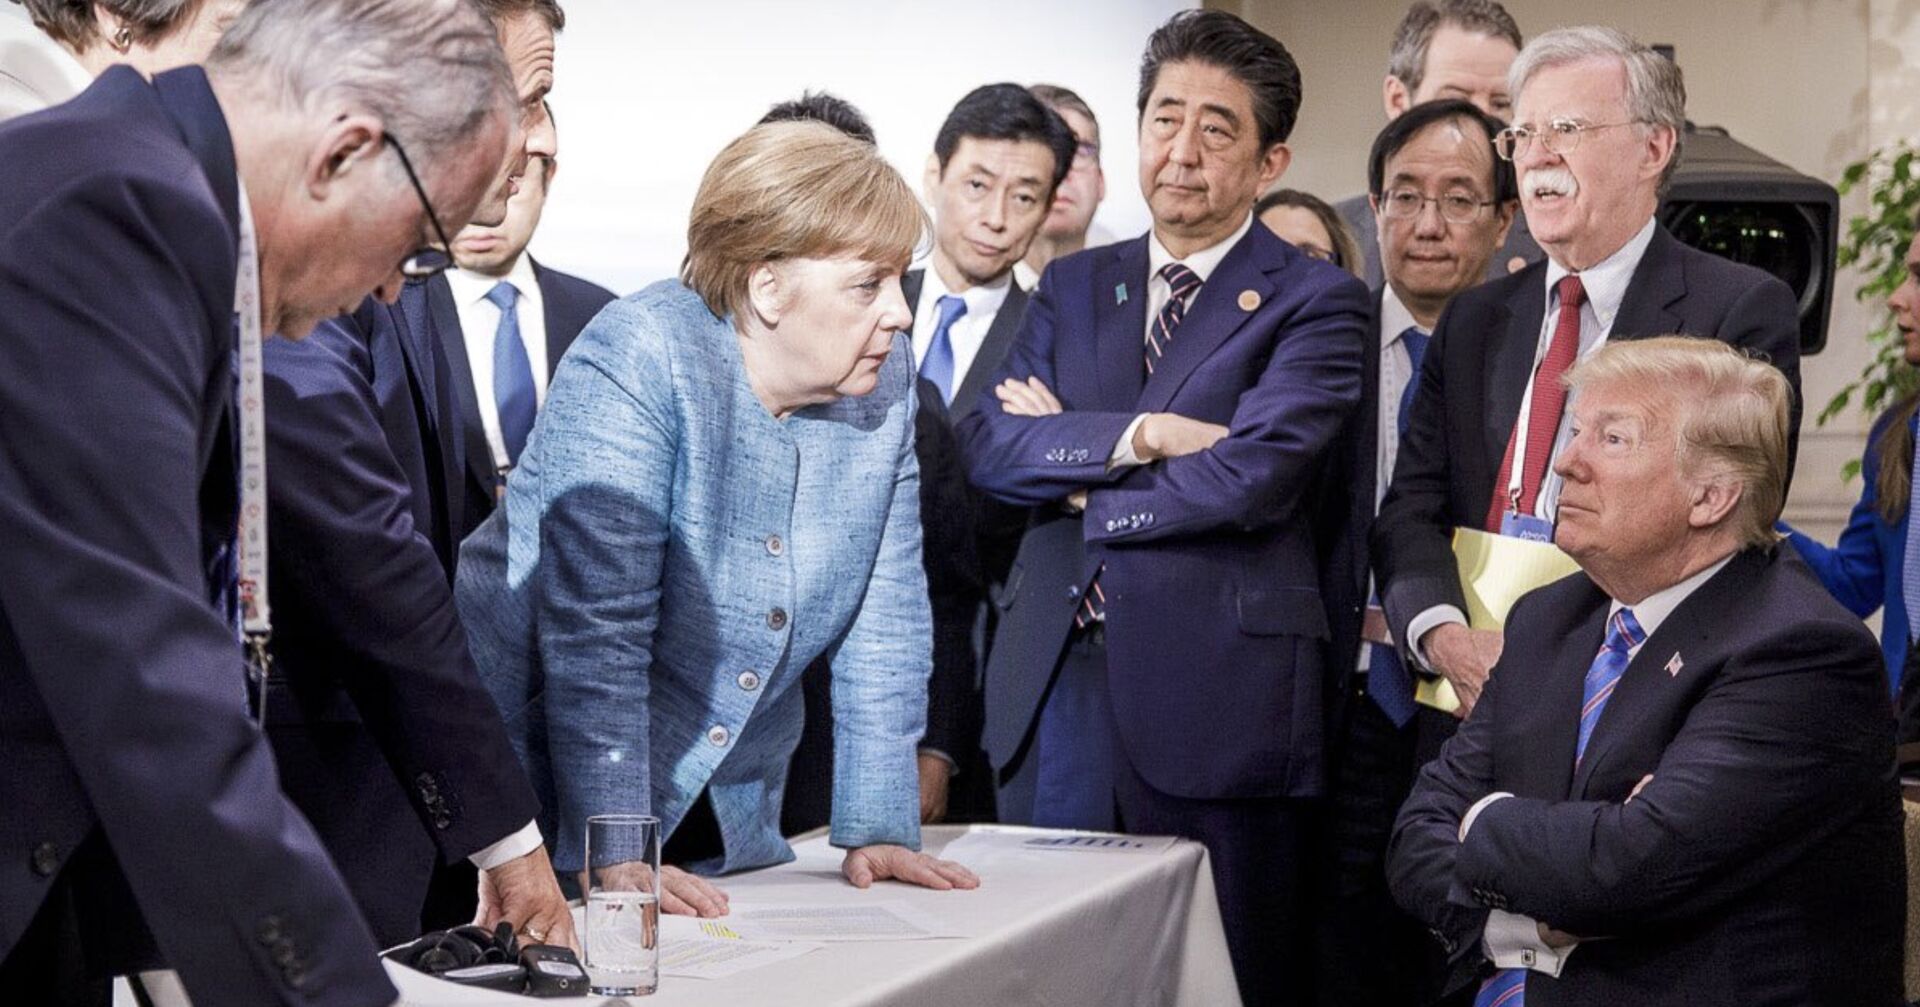 Канцлер ФРГ Ангела Меркель разговаривает с президентом США Дональдом Трампом на саммите G7. 9 июня 2018 - ИноСМИ, 1920, 31.10.2020